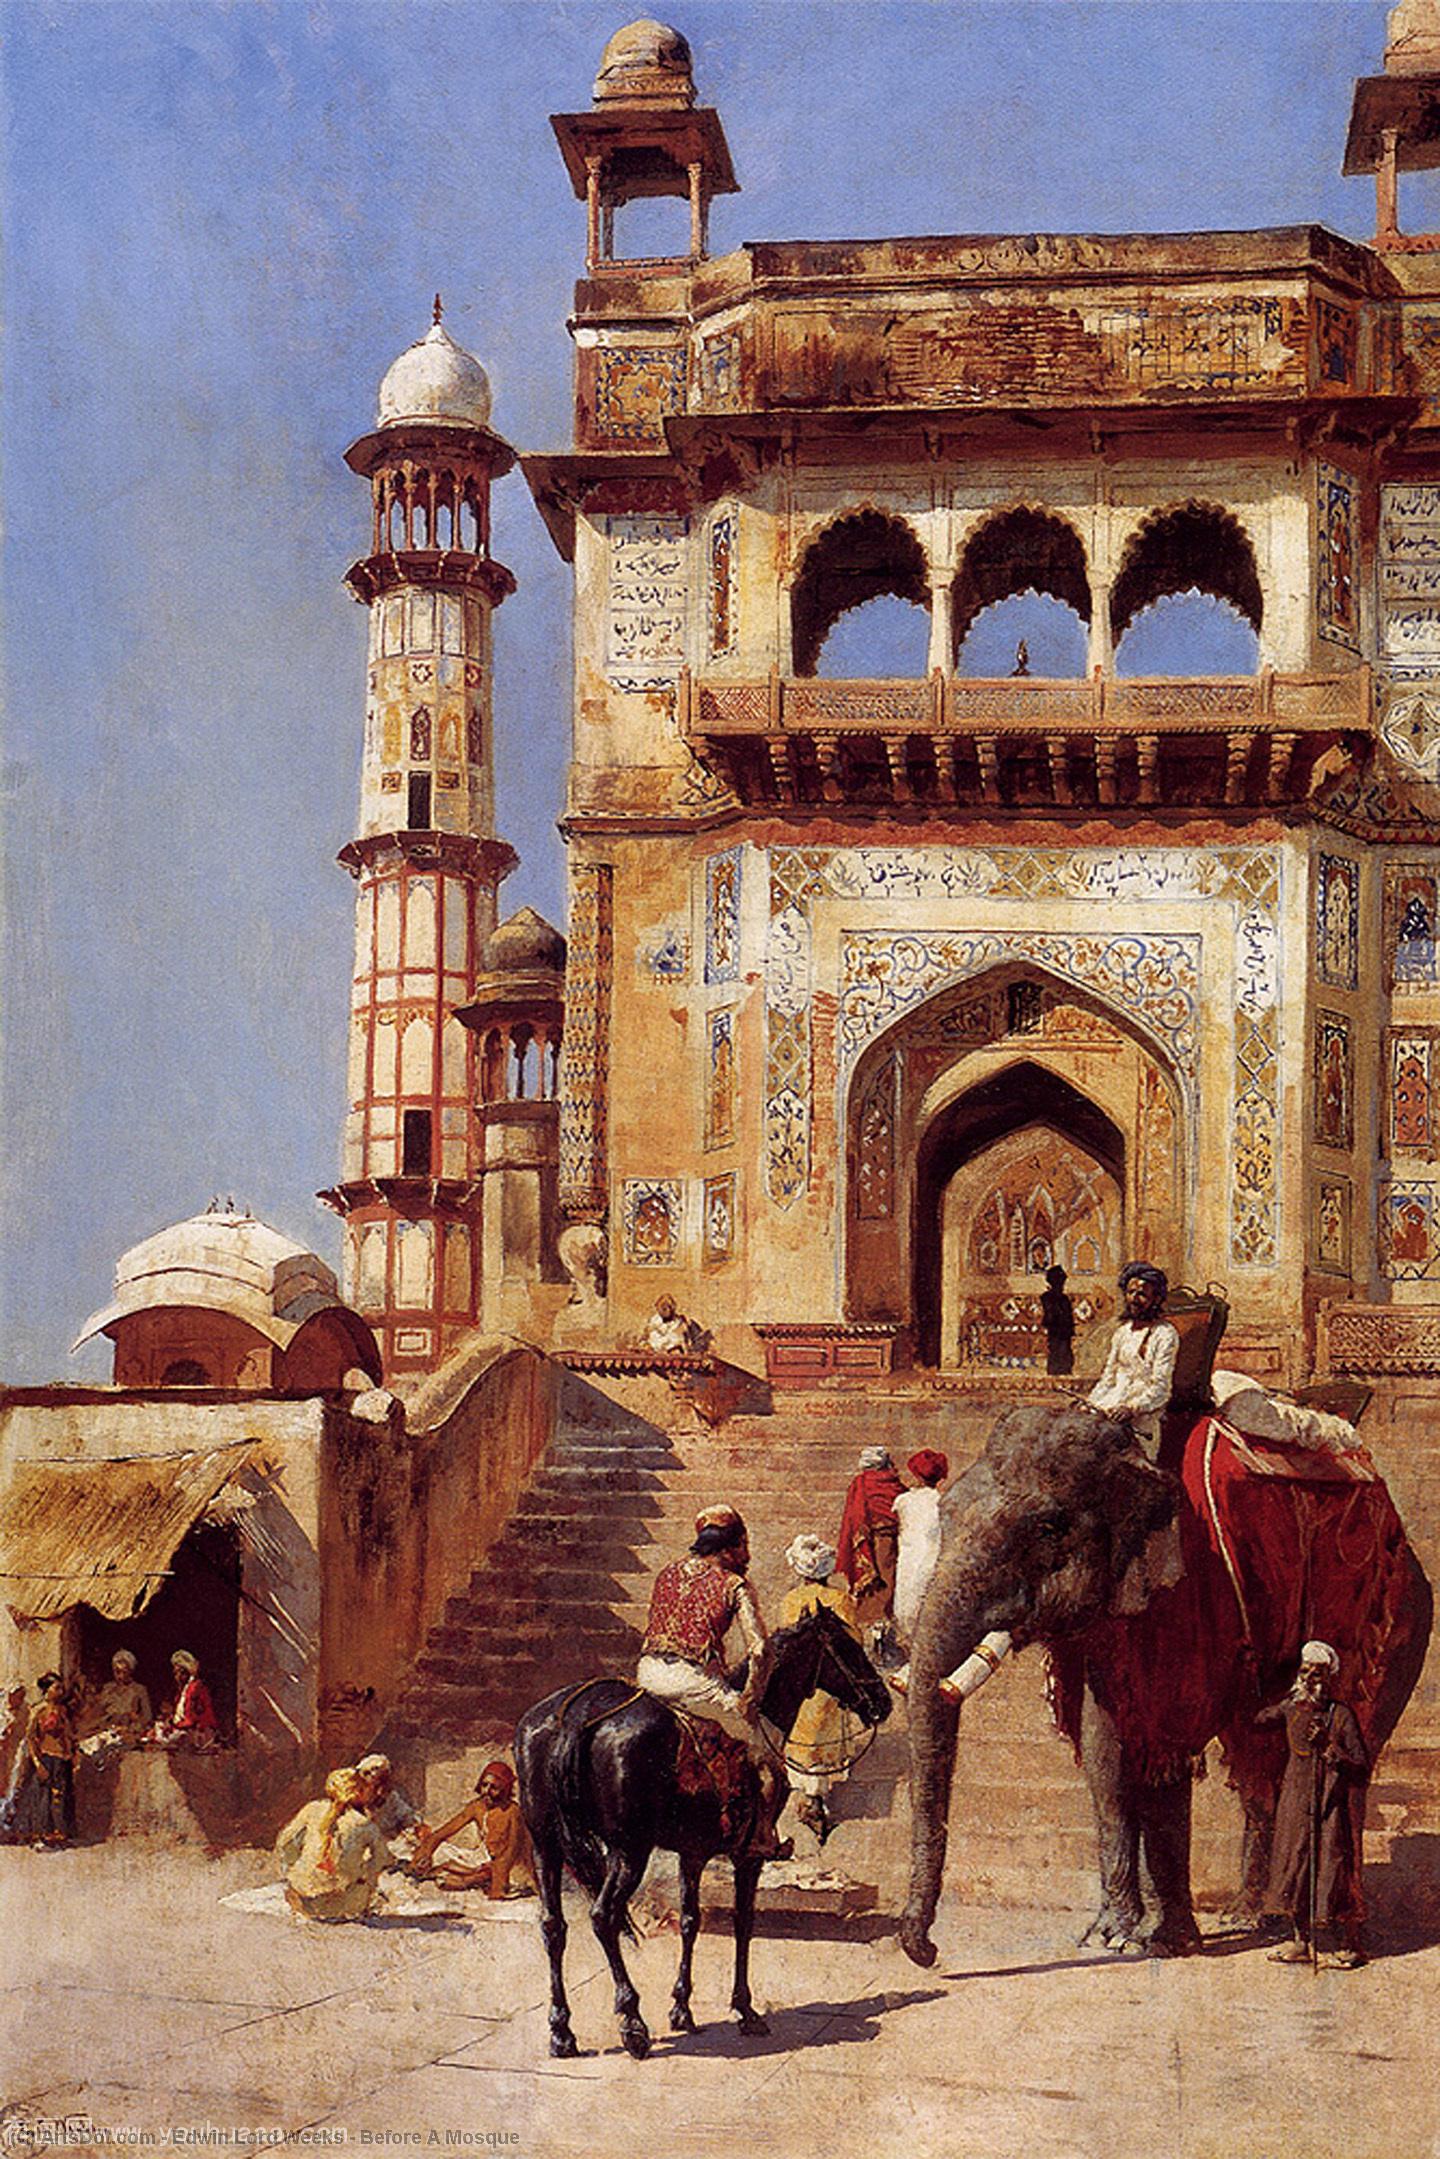 WikiOO.org - Εγκυκλοπαίδεια Καλών Τεχνών - Ζωγραφική, έργα τέχνης Edwin Lord Weeks - Before A Mosque